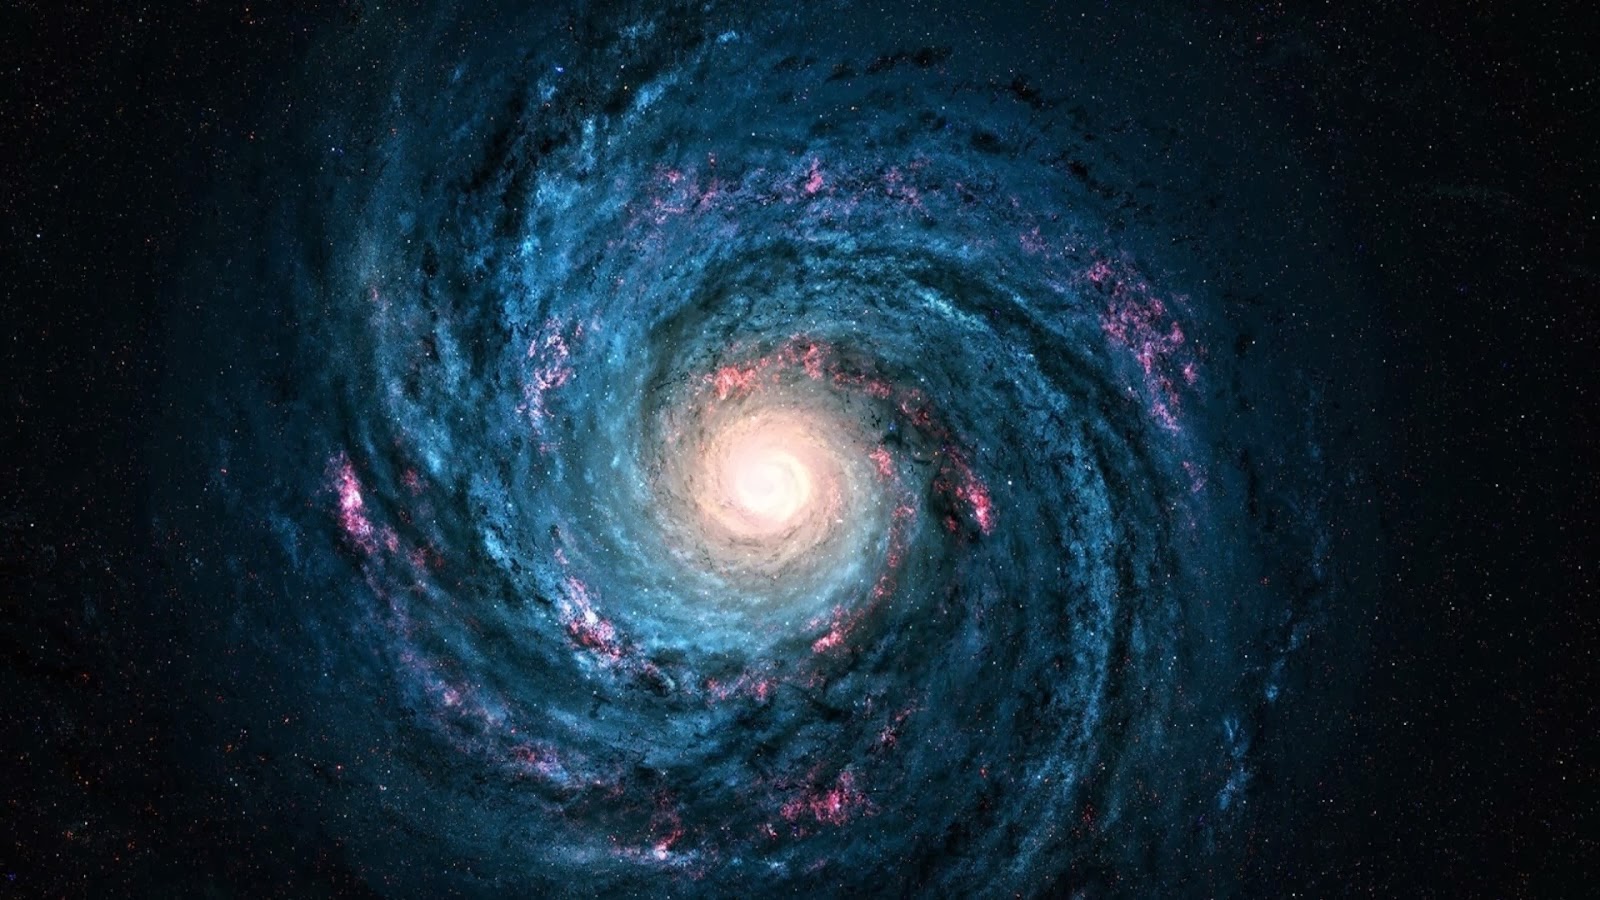 Galaxy HD Wallpaper 1080p Space Milky Way